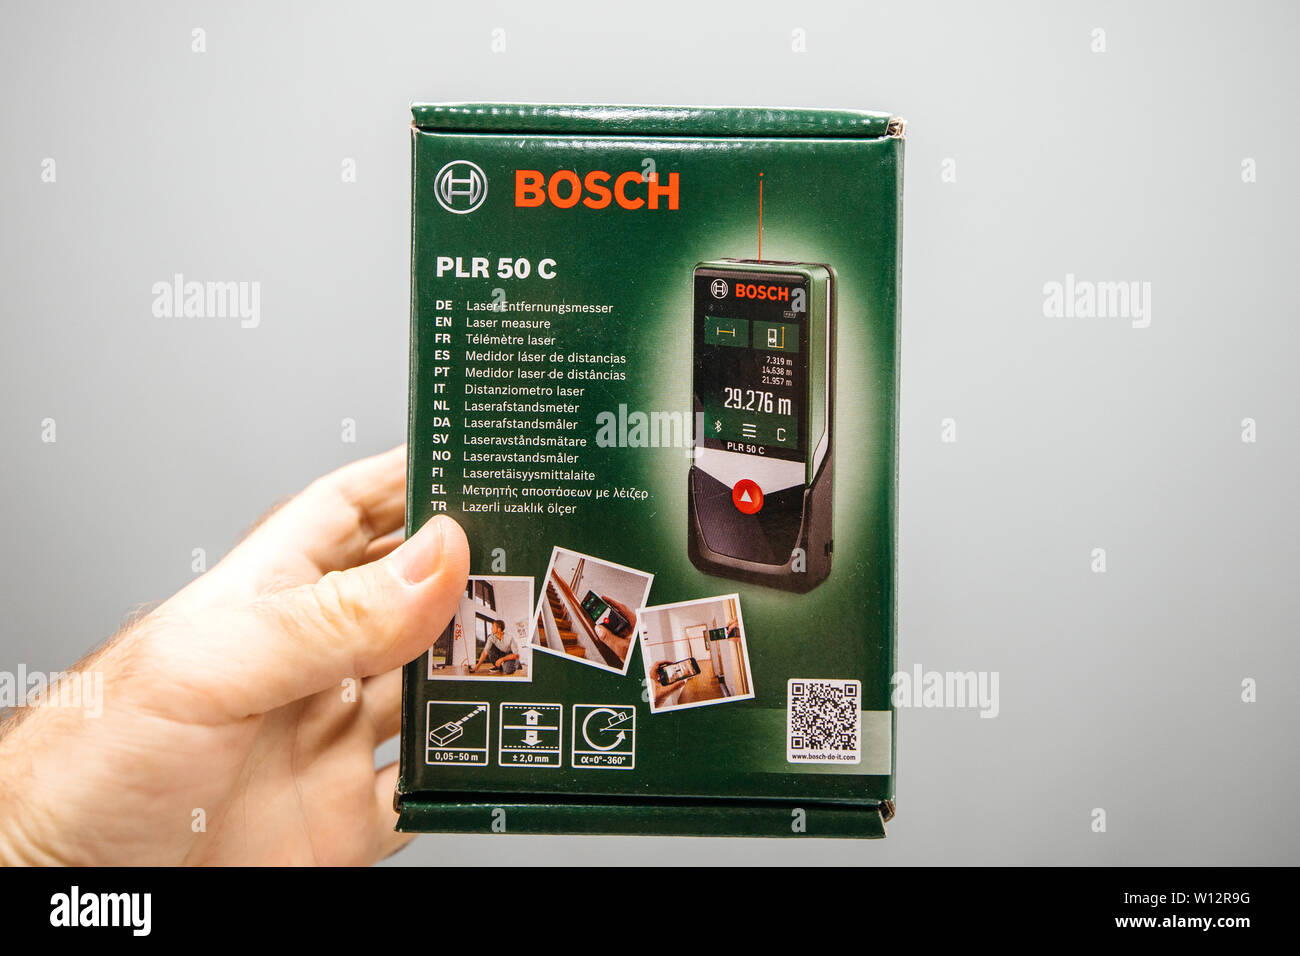 Paris, Frankreich - Jul 4, 2019: der Mensch hand Bosch PLR 50 C Laser  messen Kartonagen Holding Box in der Hand Stockfotografie - Alamy